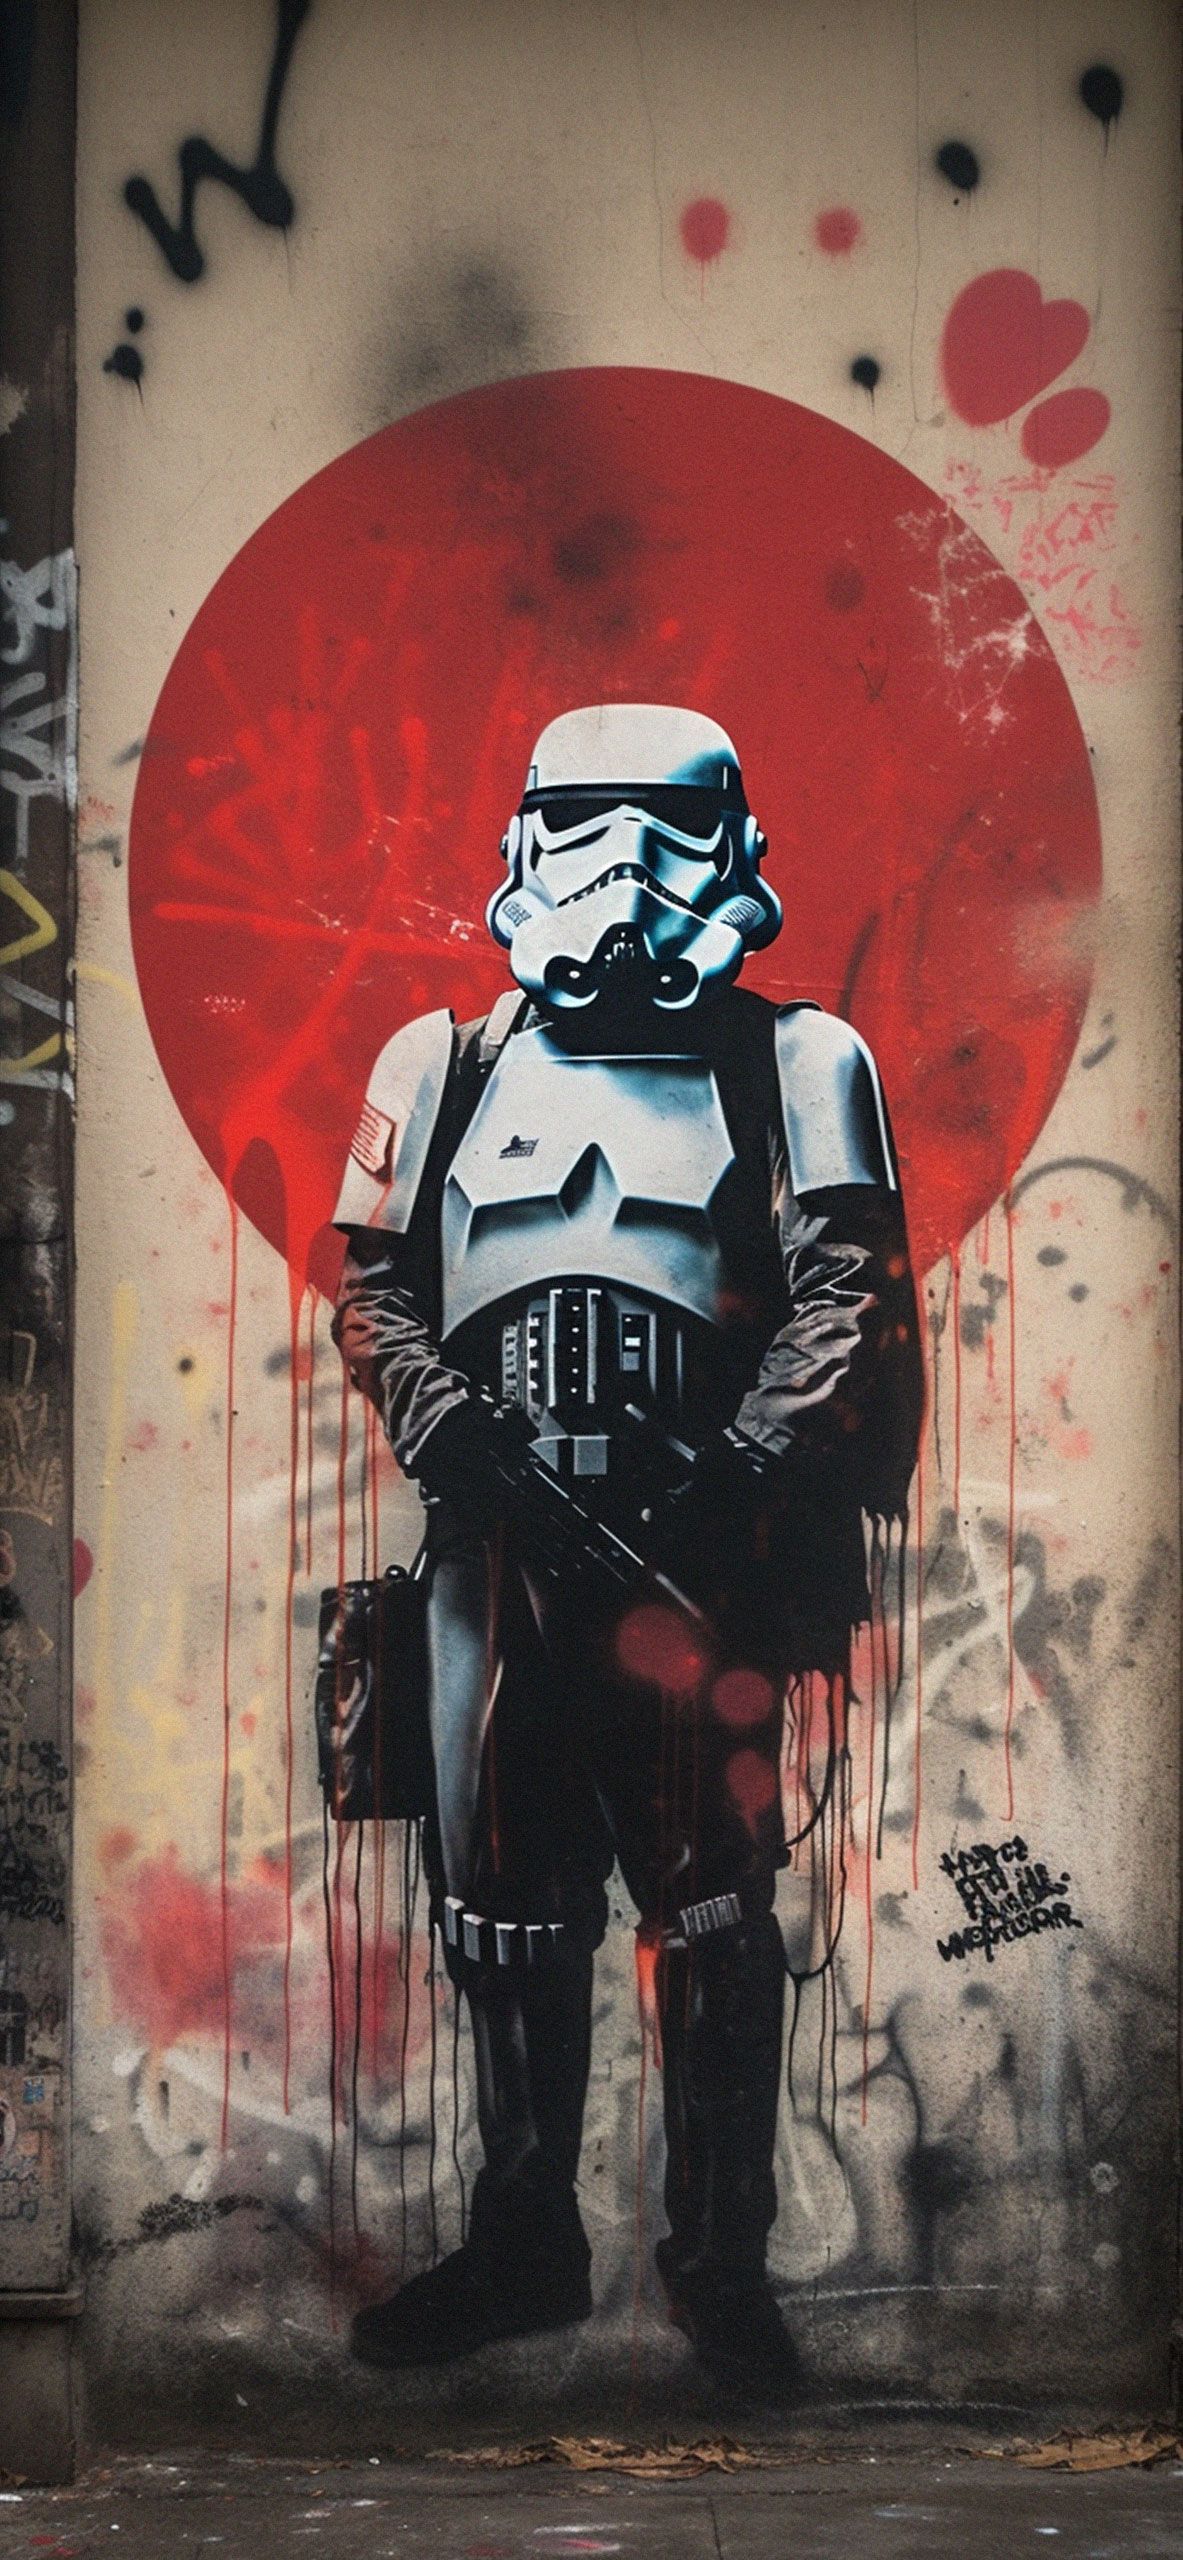 Stormtrooper graffiti on a wall - Graffiti, Star Wars